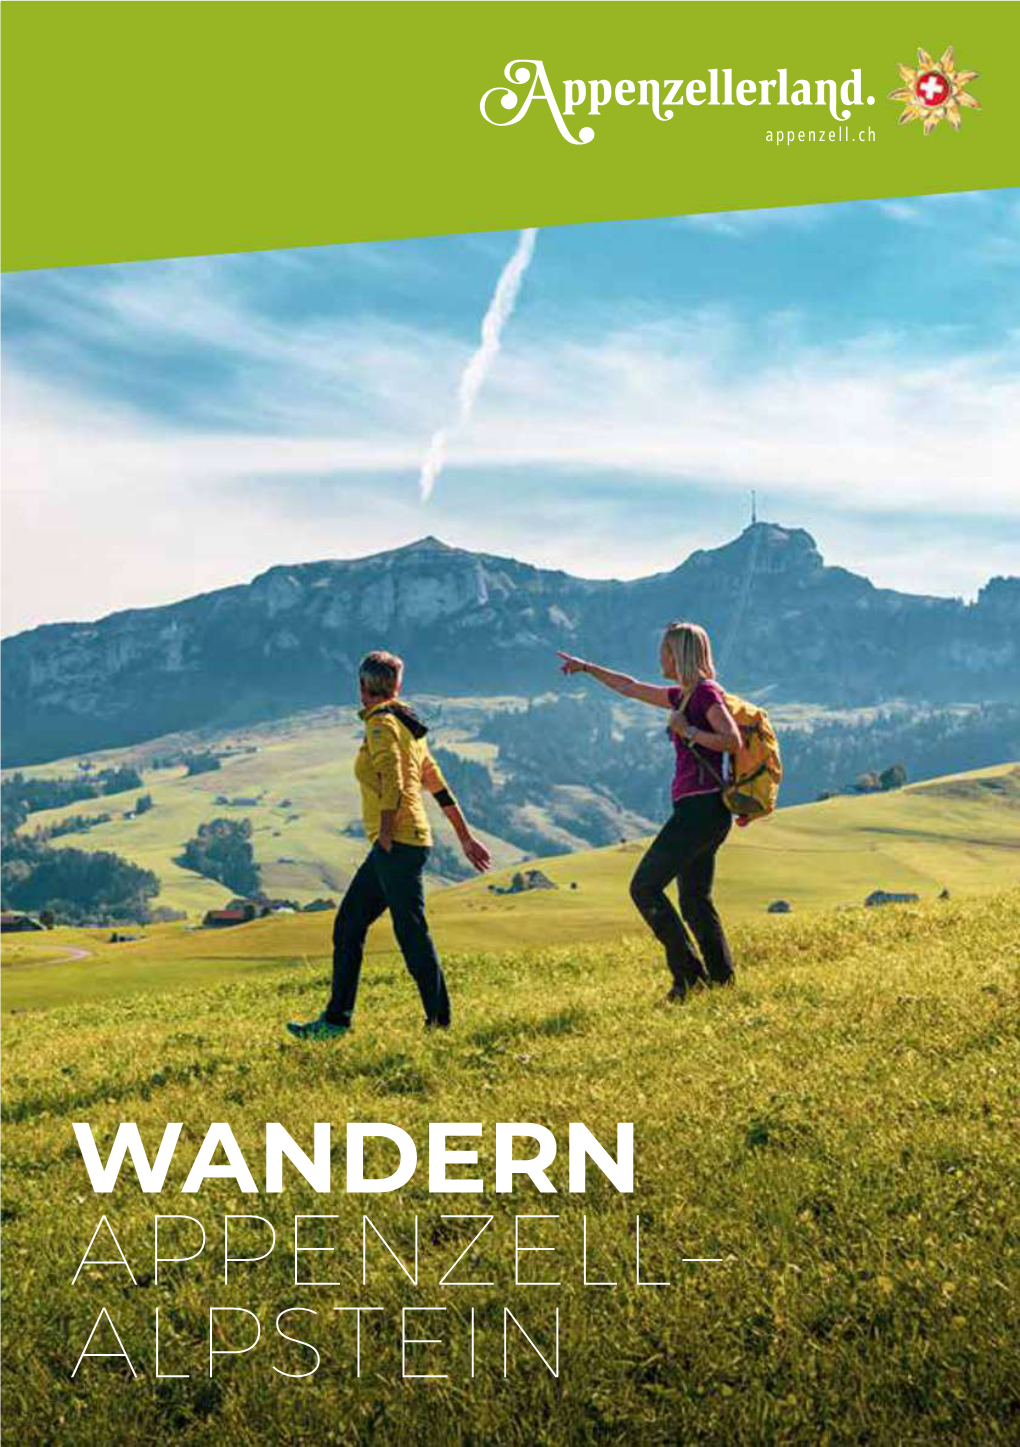 Wandern Appenzell– Alpstein 2 Inhalt